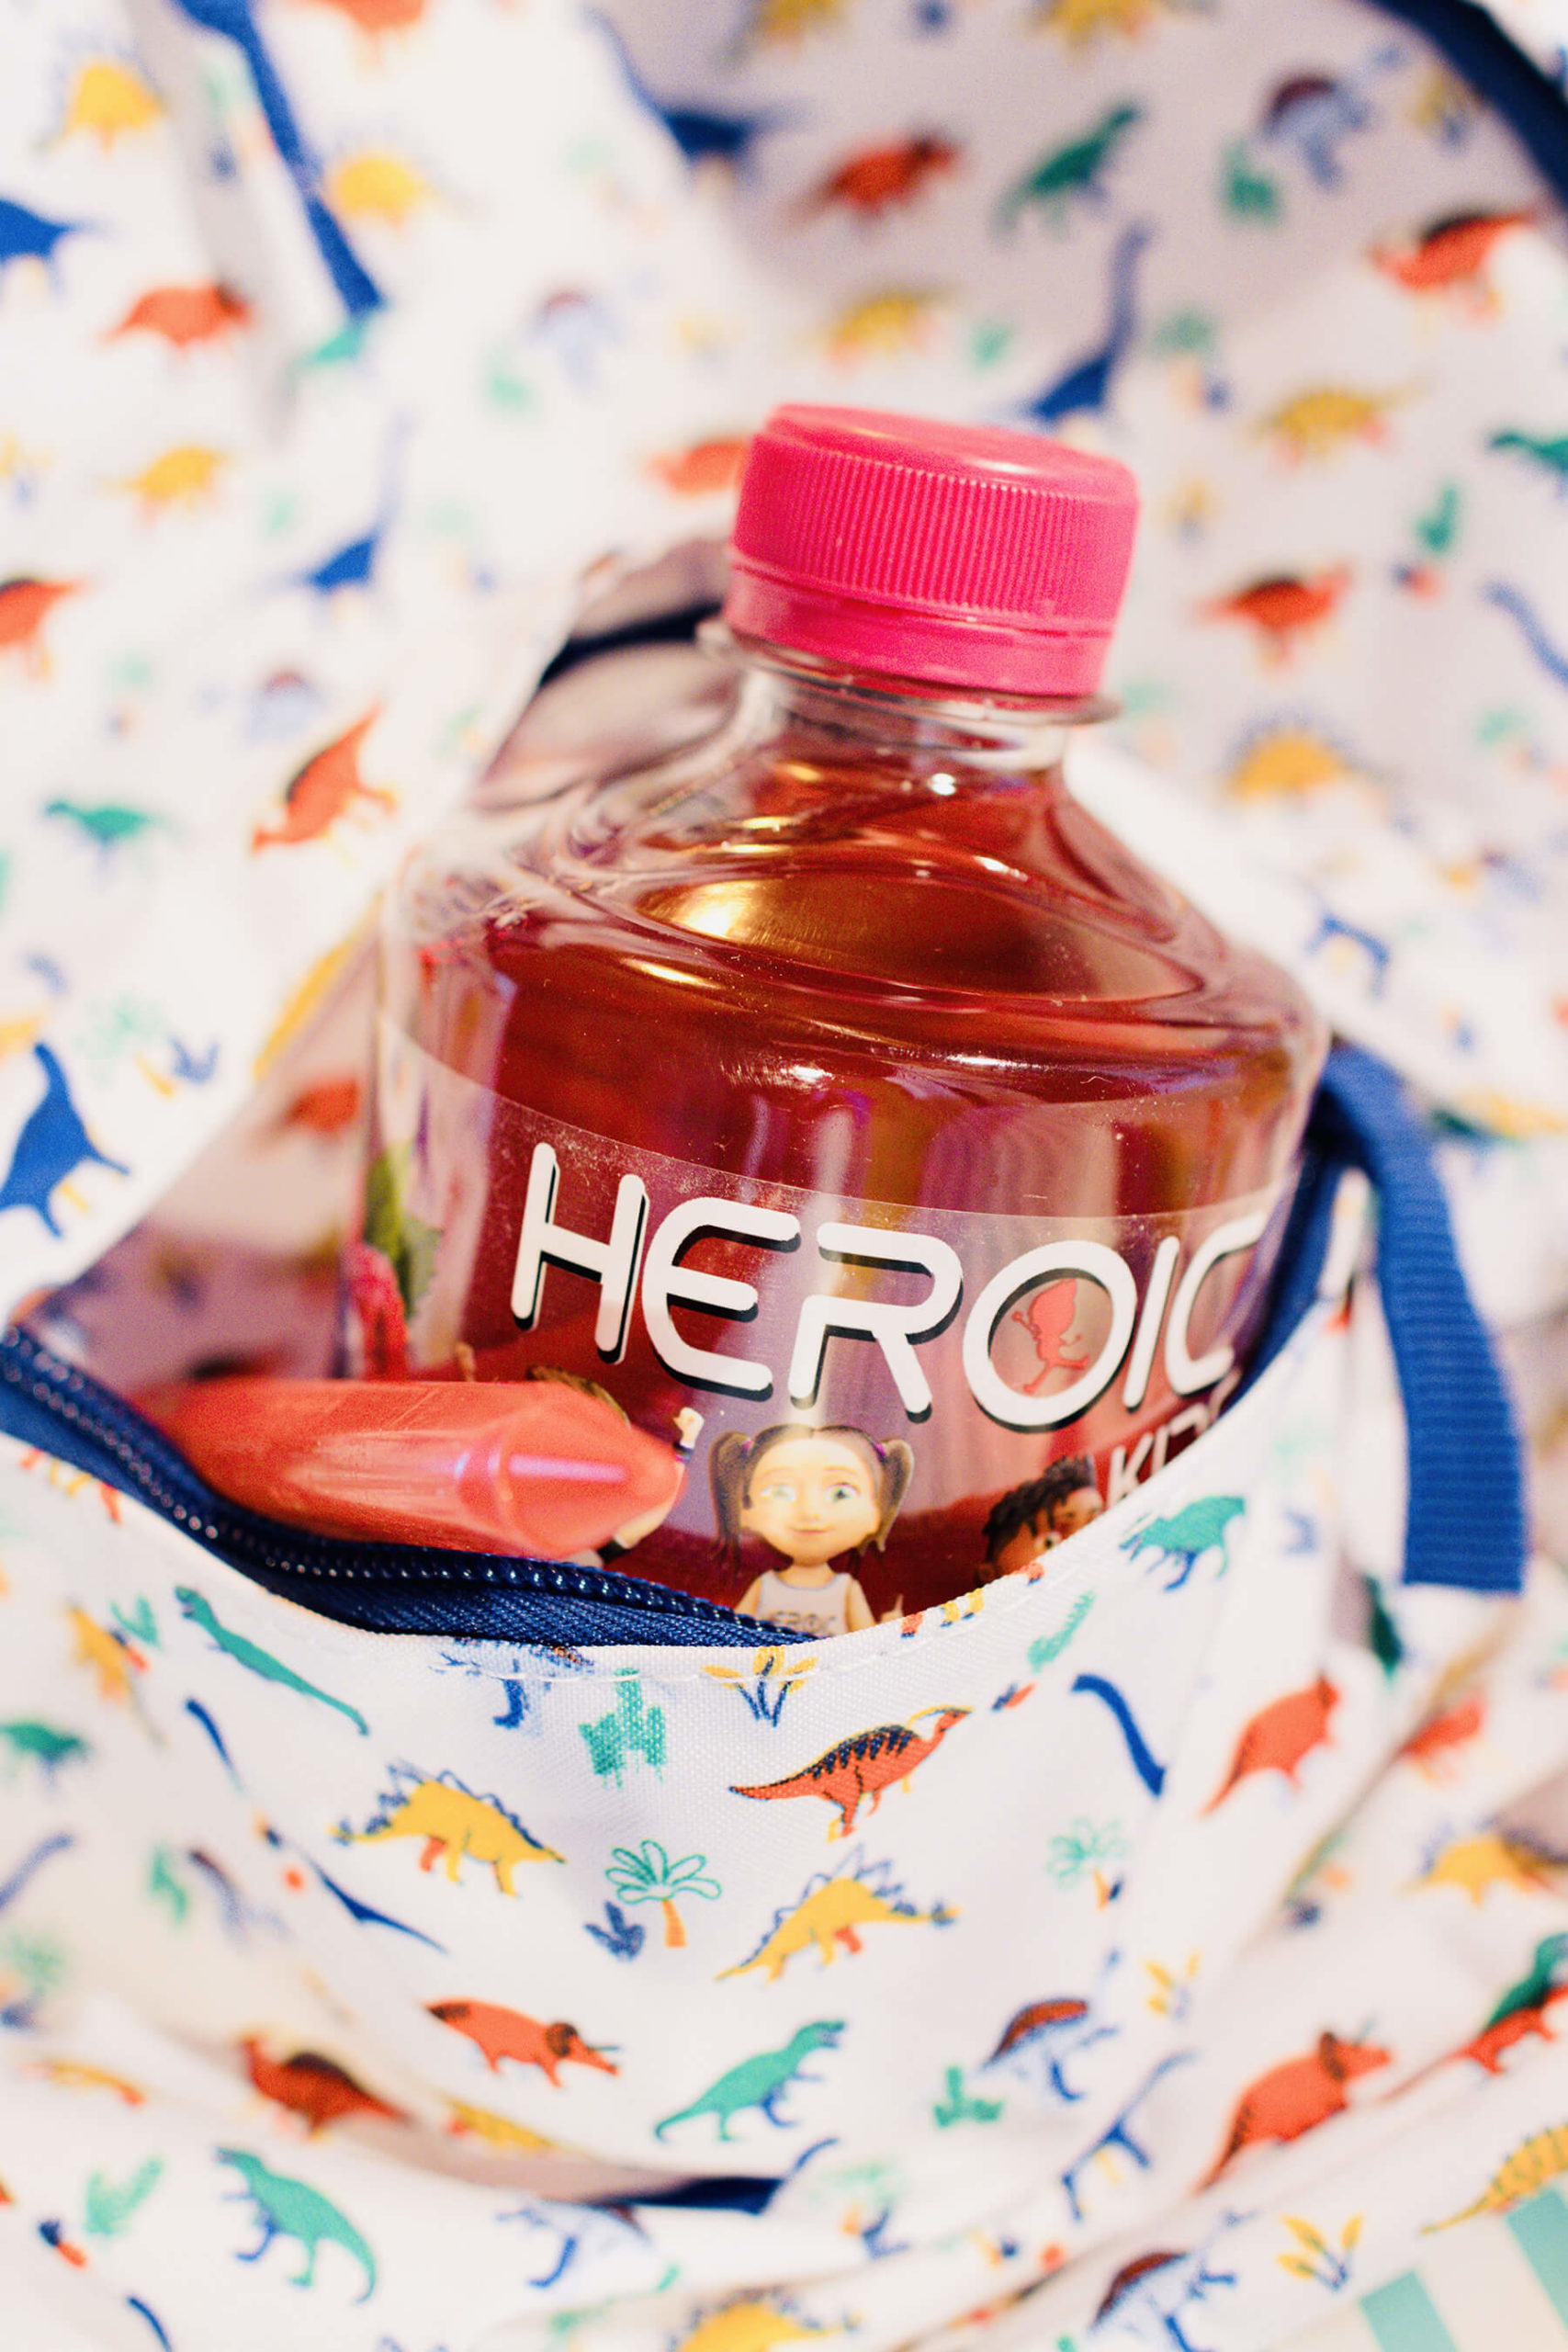 La boisson Heroic KIDS au goût fraise & cassis est une boisson spécialement conçut pour les enfants sans colorants artificiels. Faites à base d’arôme naturel de fruits, riches en vitamine B et C, elle permet à vos enfants de devenir les prochains grand sportif de ce monde